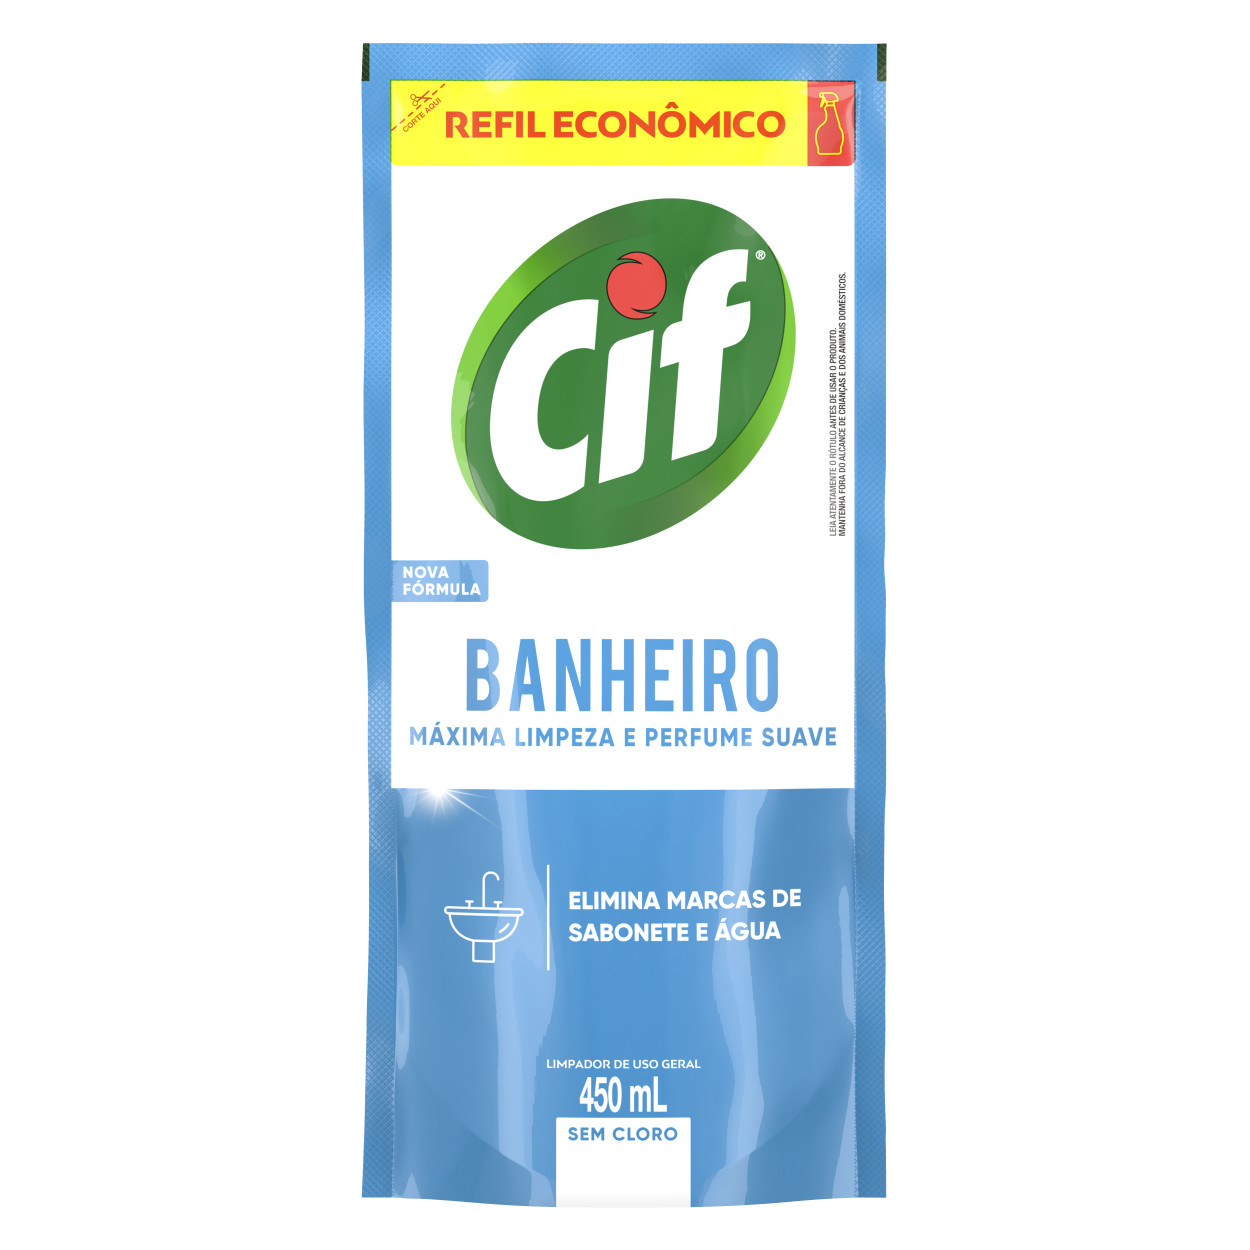 CIF Banheiro Refil Econômico productos